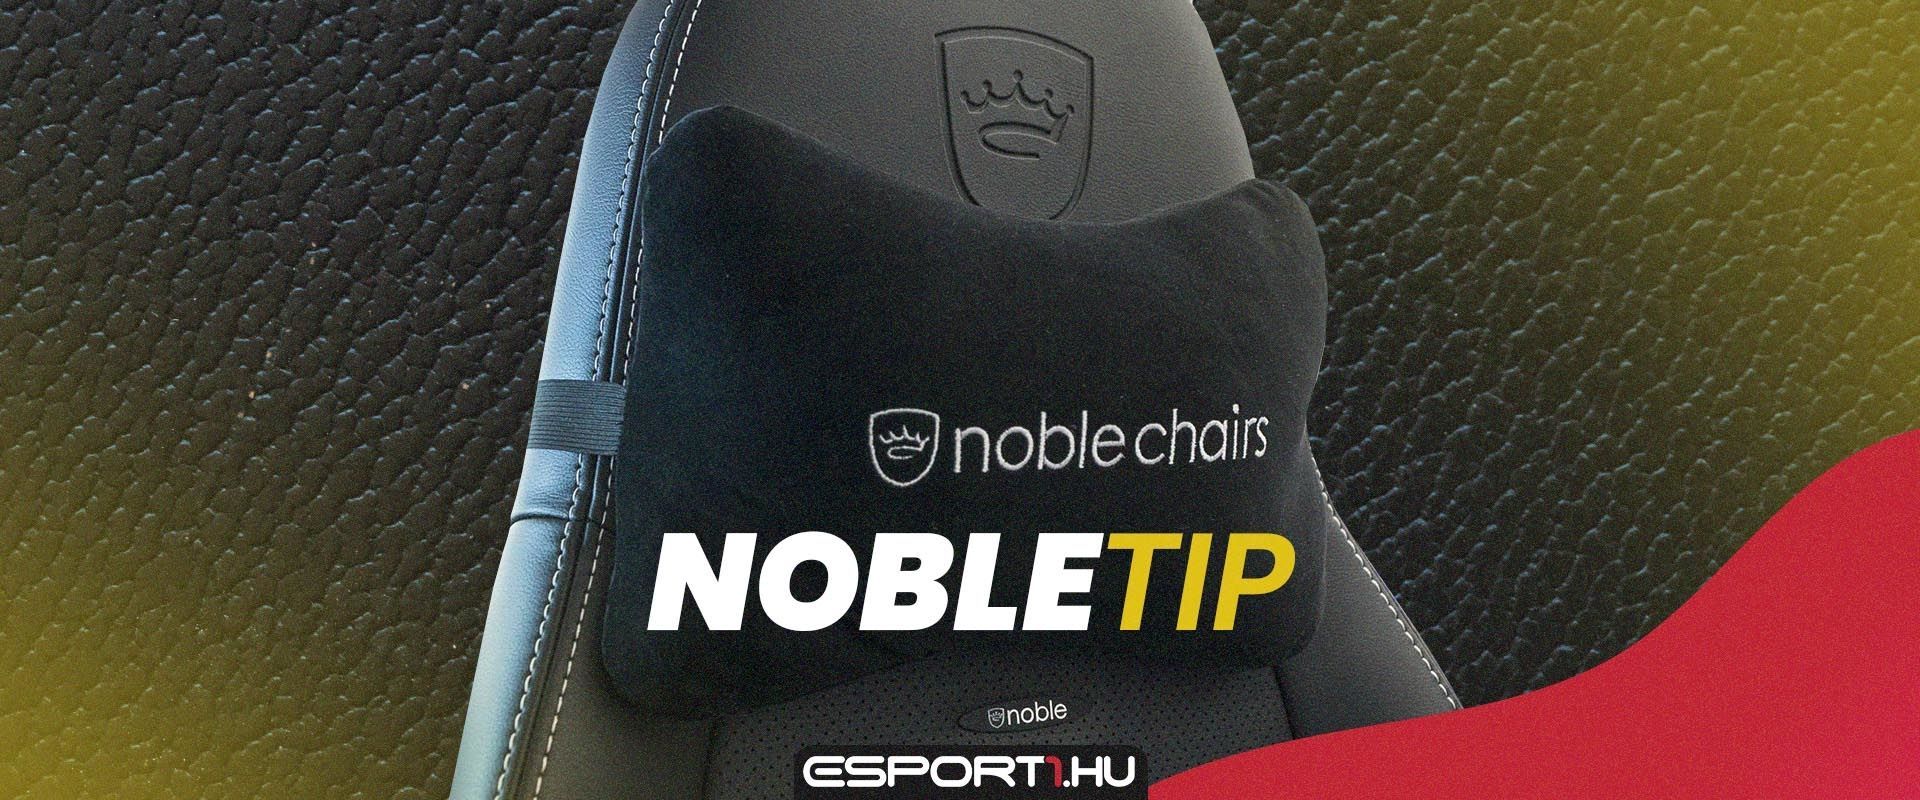 Nobletippek - 1. rész: Figyelj az asztalod és a széked távolságára!